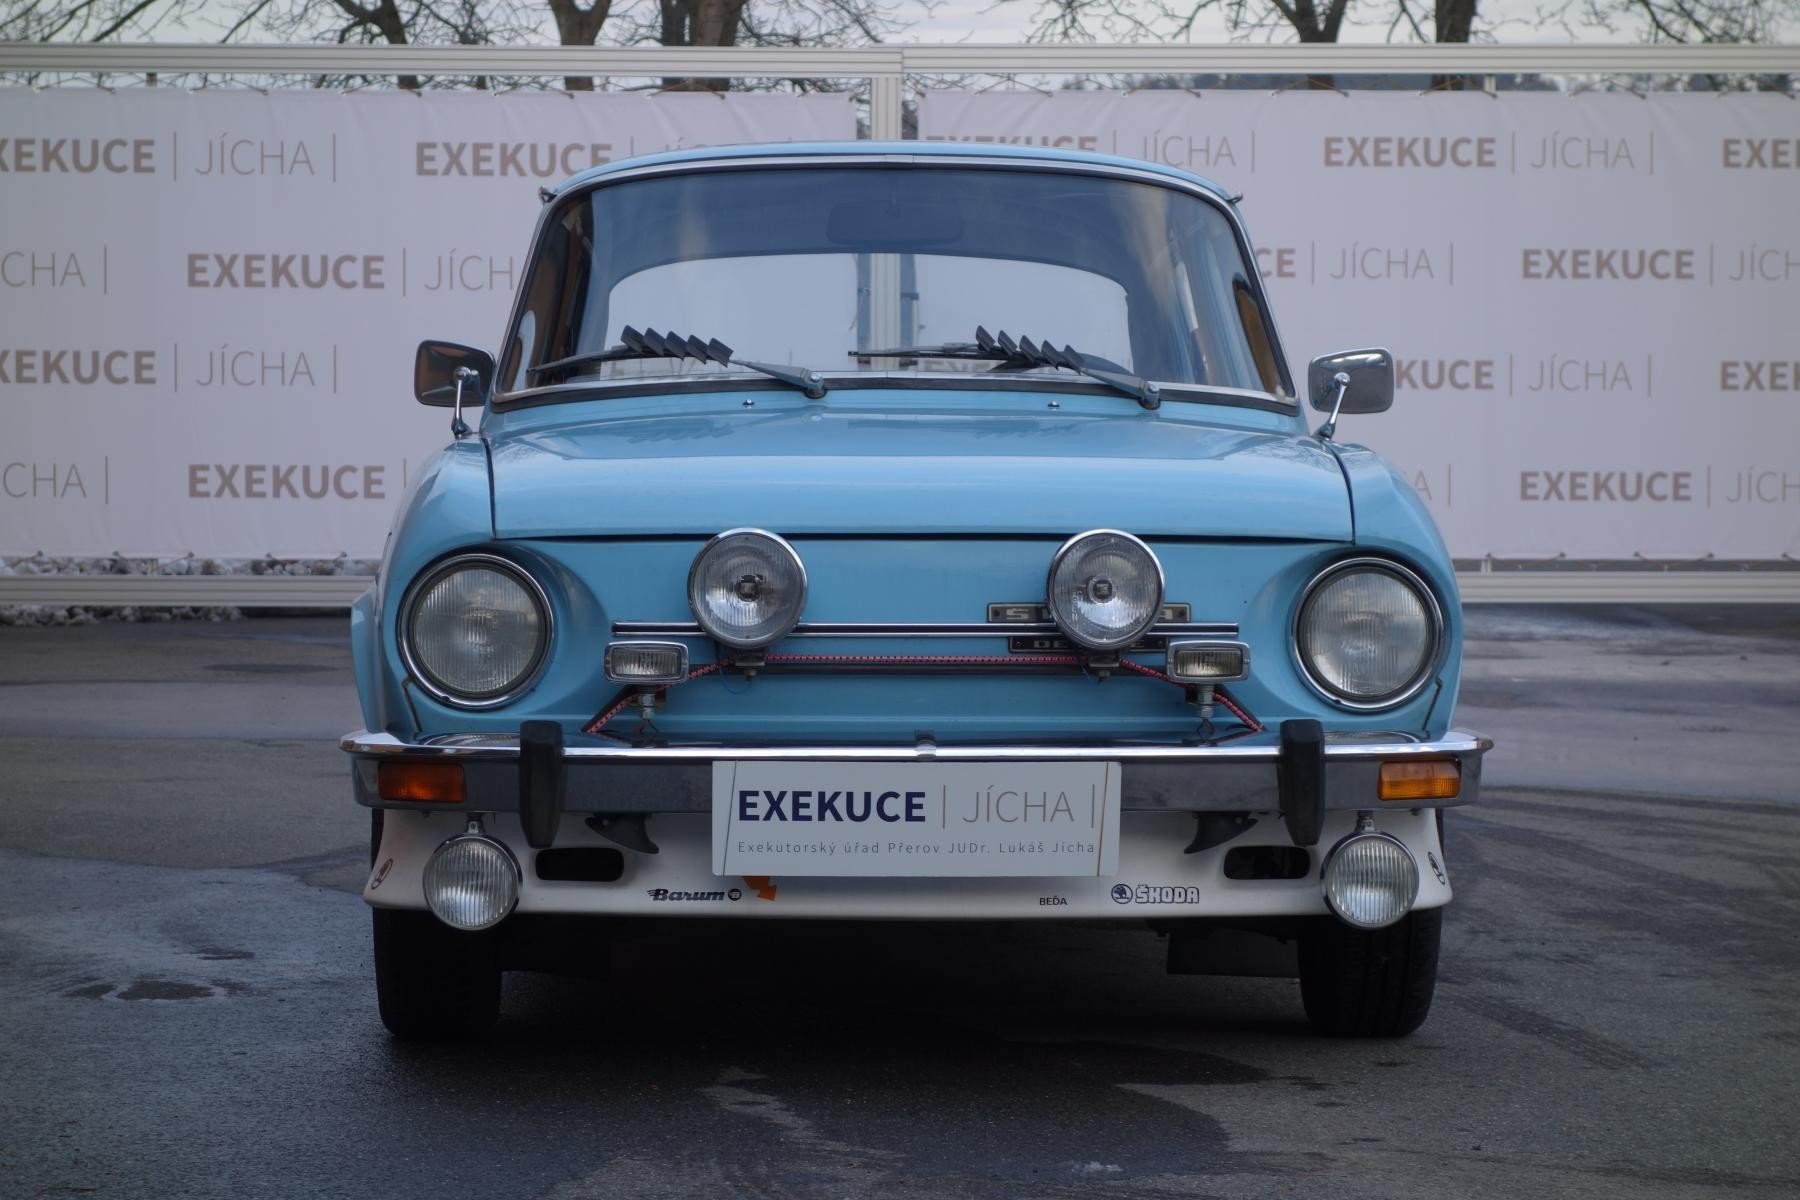 V nabídce Exekutorského úřadu Přerov se objevila i překvapivě zachovalá Škoda 110 L